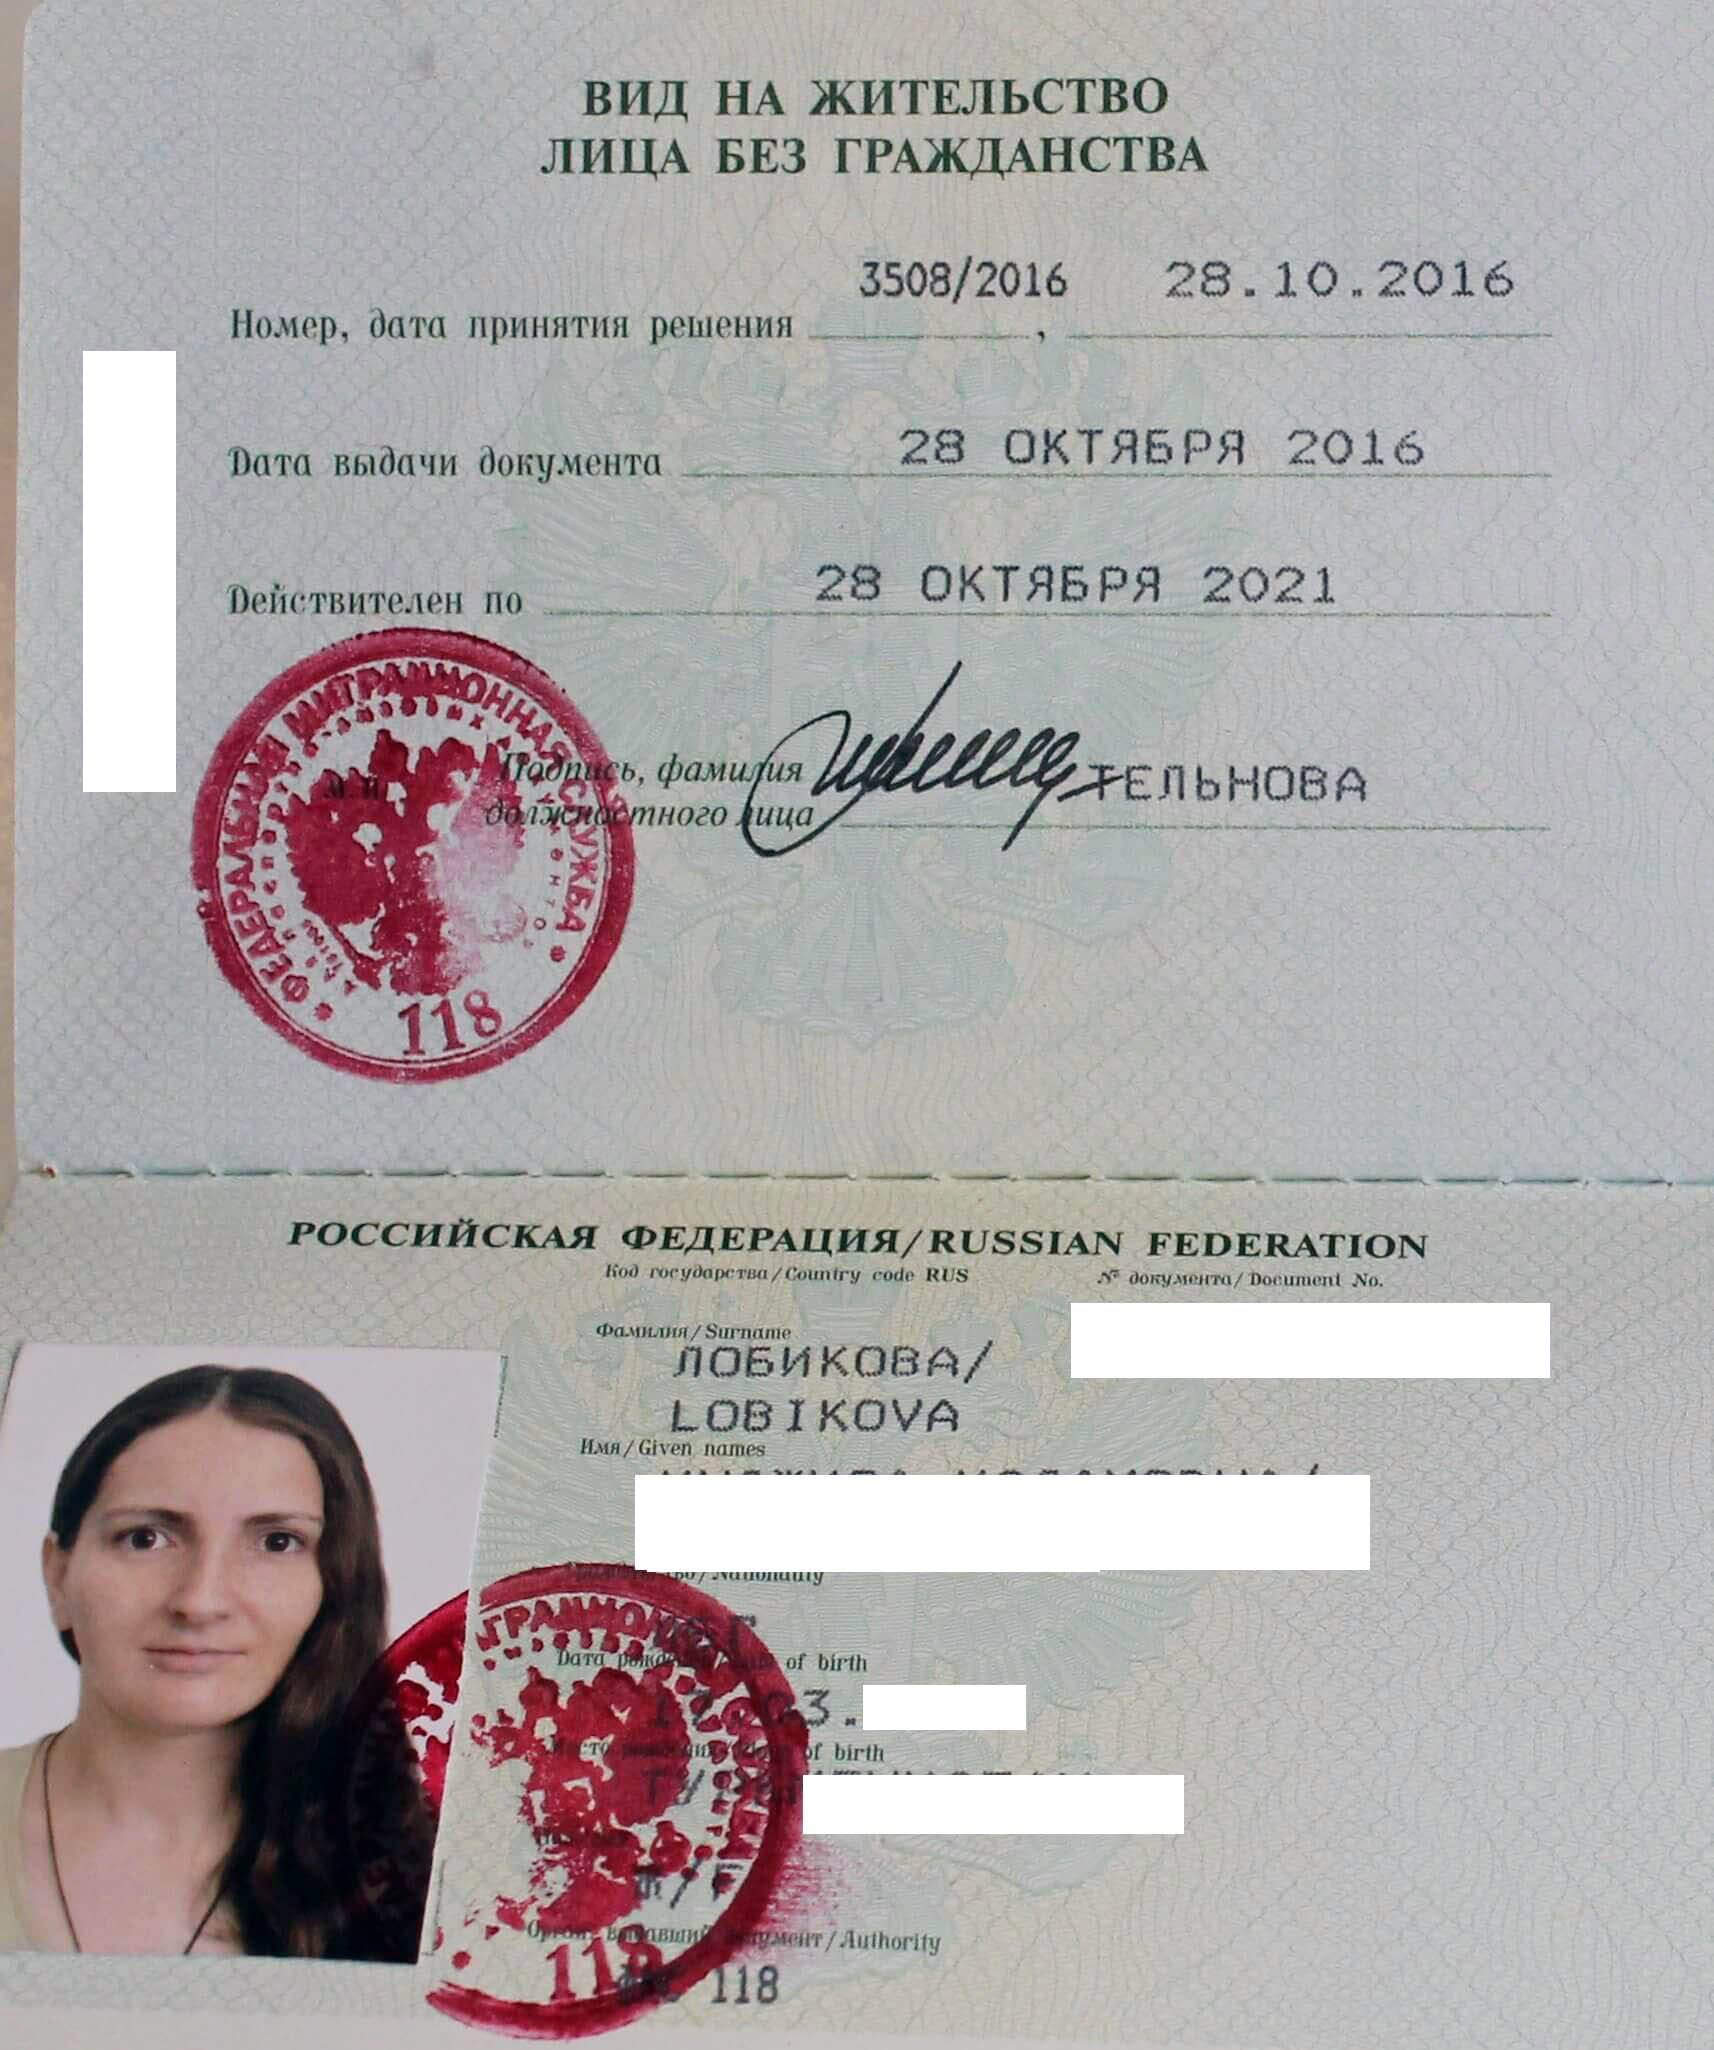 Получение гражданства люксембурга для россиян в 2023 году — изменения, новости | provizu.ru